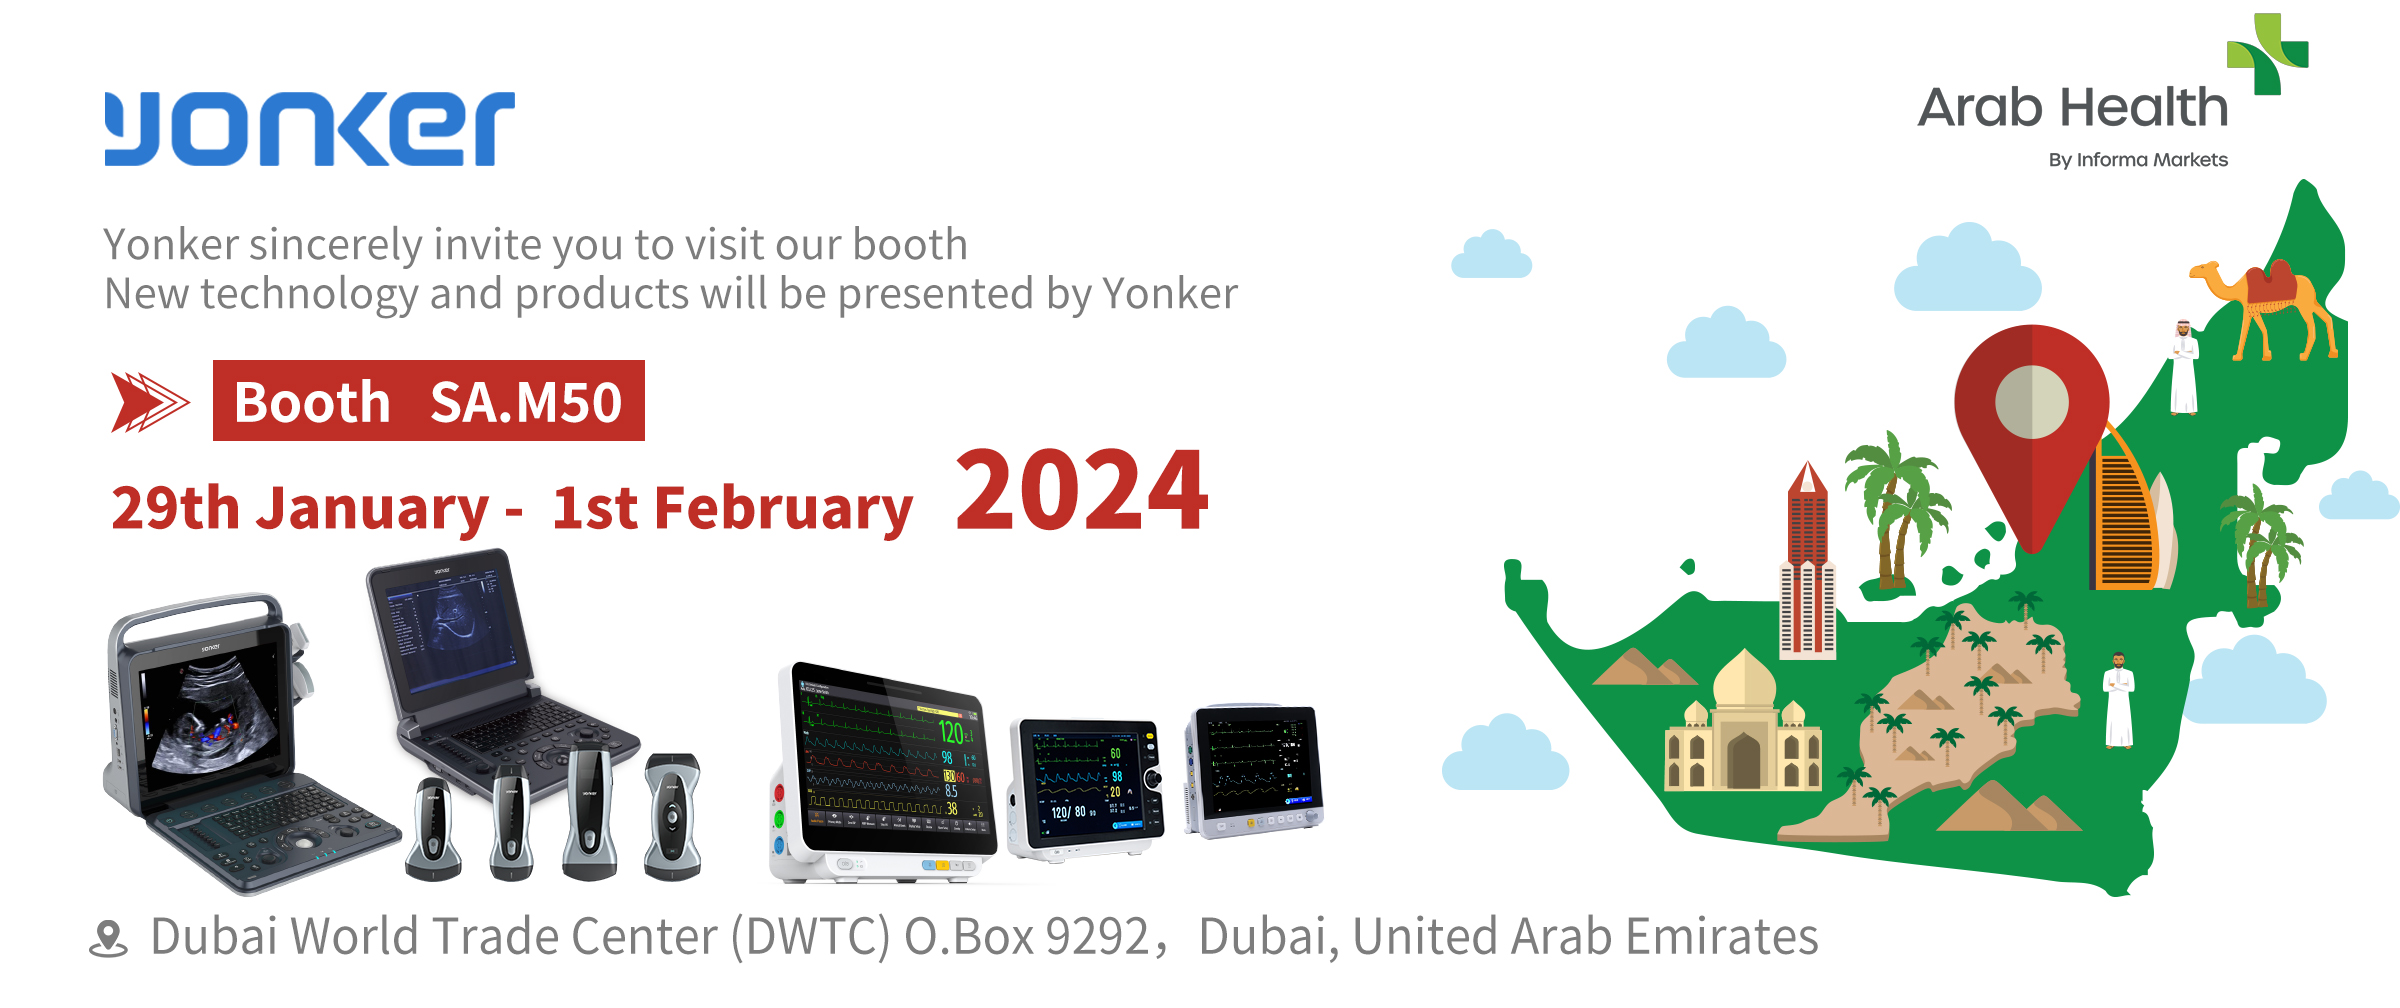 Yonkermed participará en la Exposición Árabe de Salud de Dubai 2024